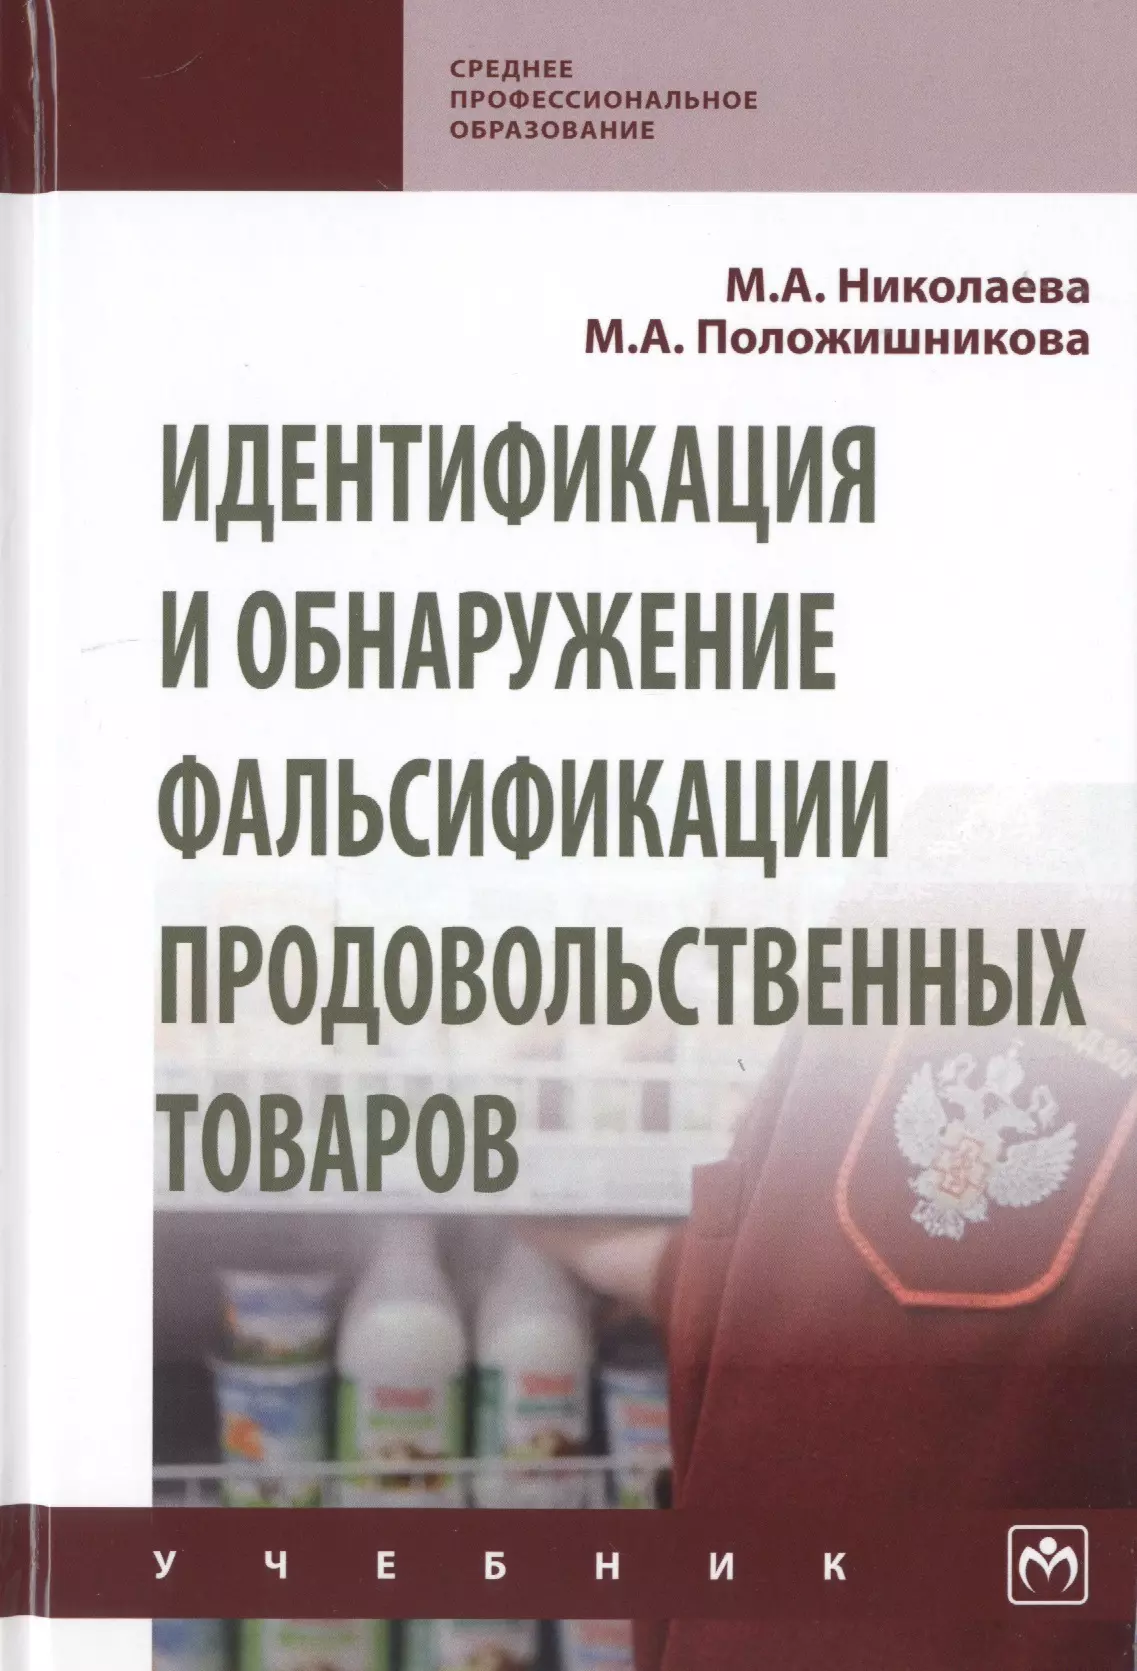 Николаева Мария Андреевна - Идентификация и обнаружение фальсификации продовольственных товаров. Учебник